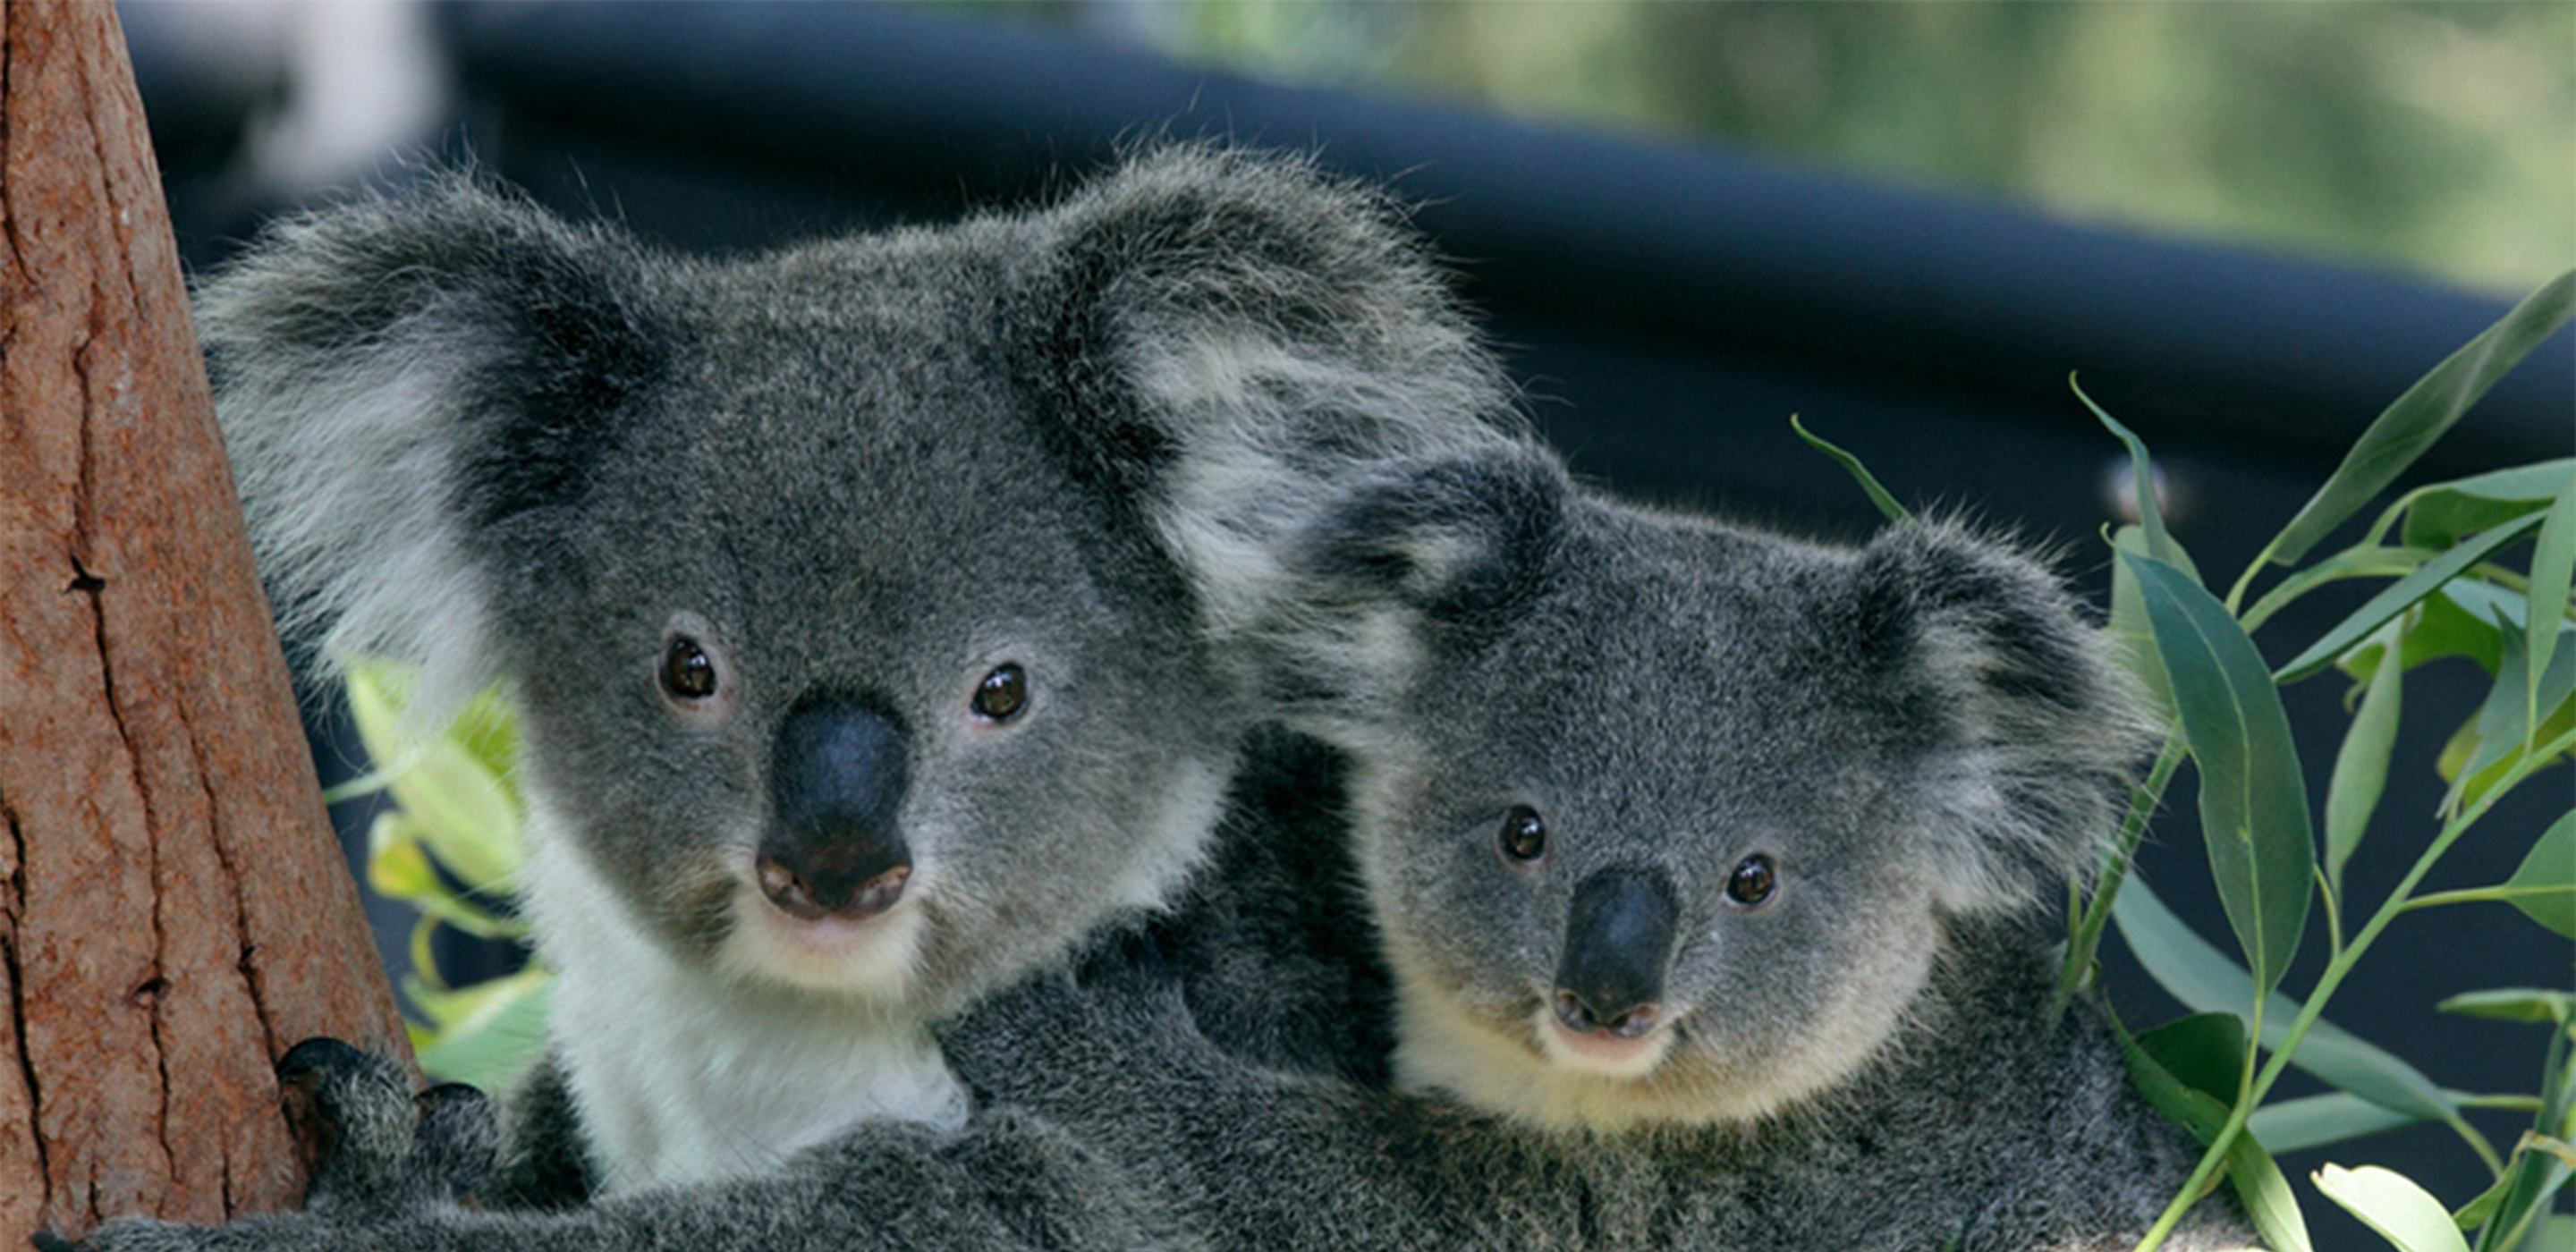 Adopt a Koala | Taronga Conservation Society Australia